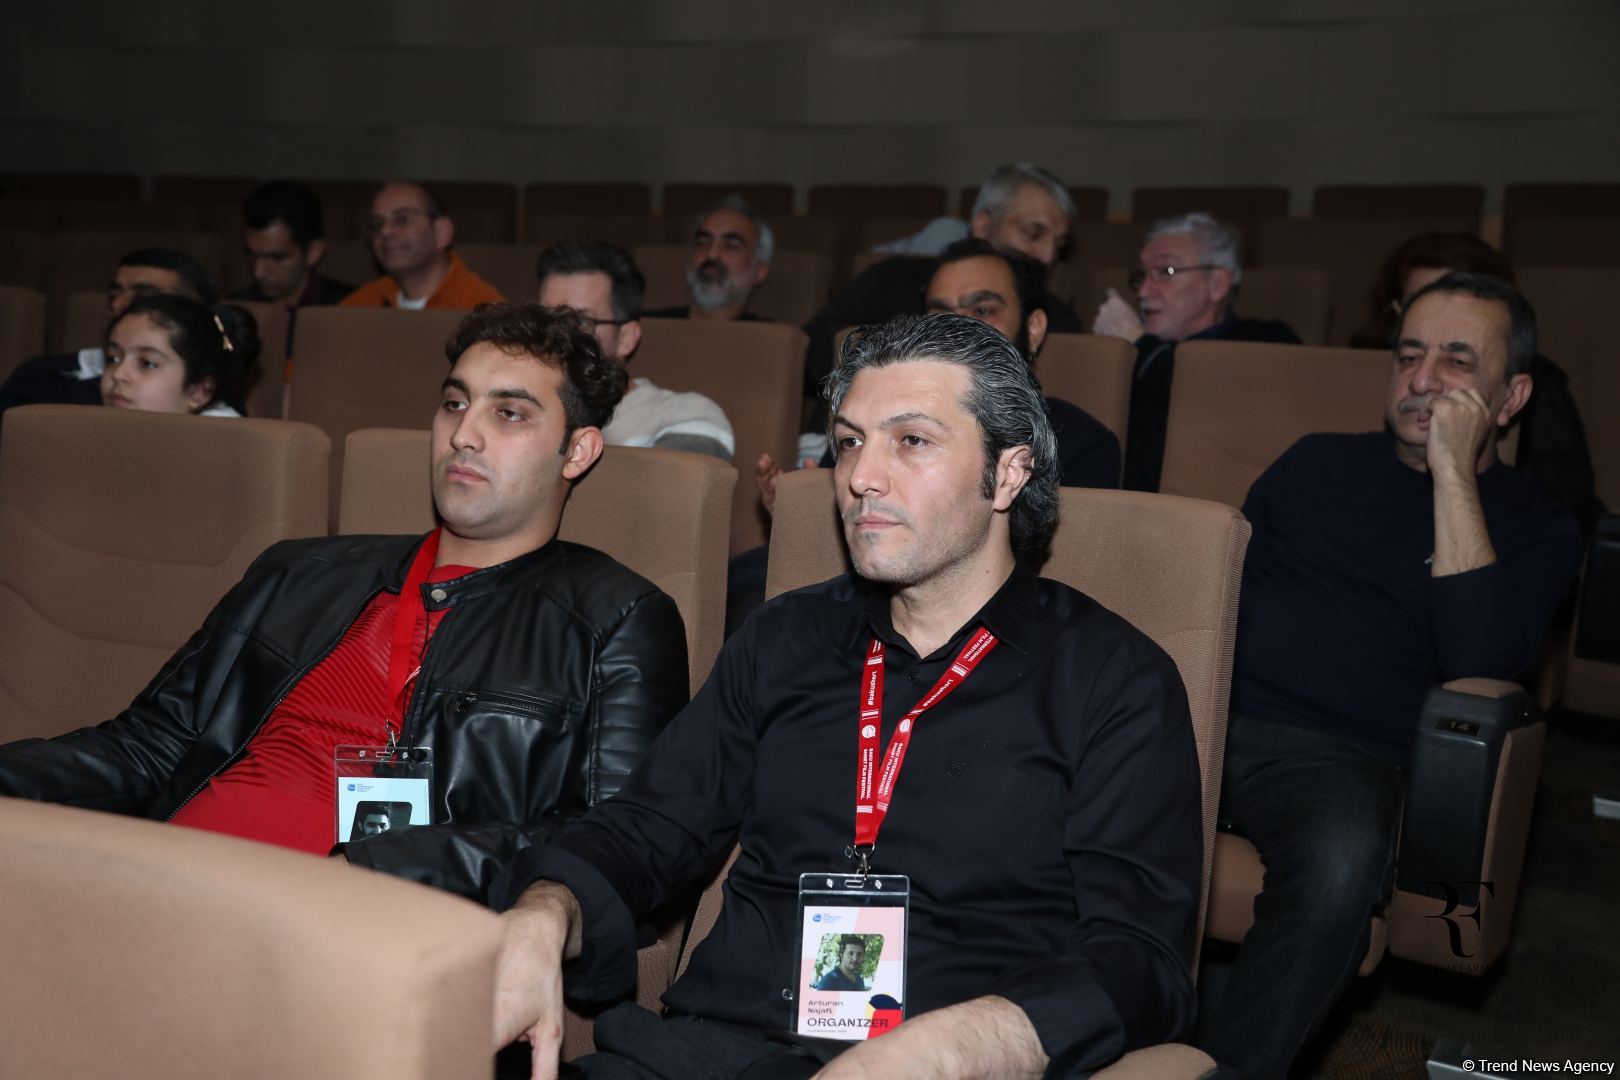 Праздник кино в Баку - торжественное открытие XIV Международного фестиваля короткометражных фильмов (ФОТО)